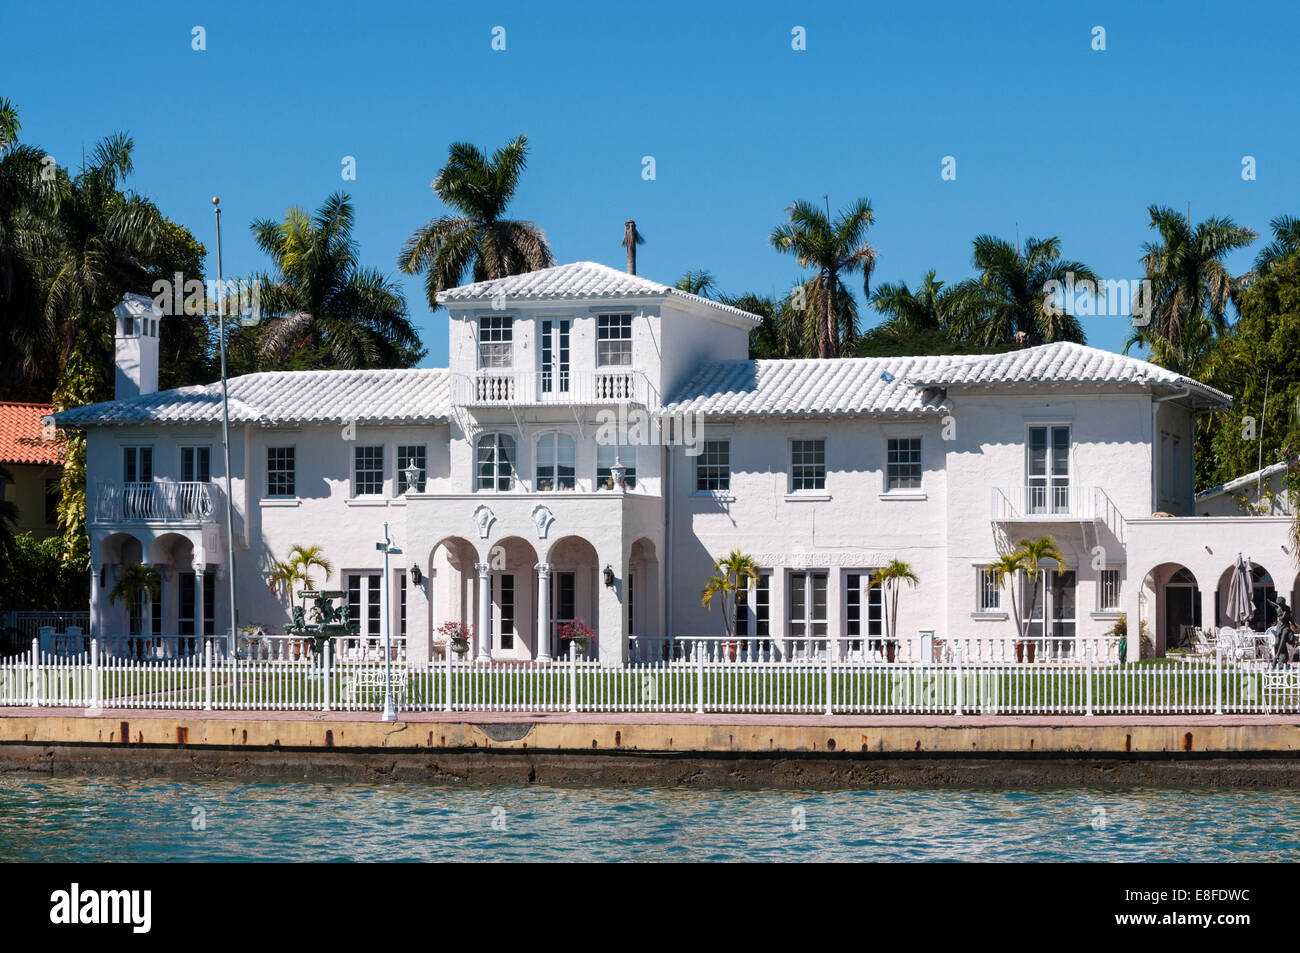 Luxurious mansion on Star Island in Miami, Florida, USA Stock Photo